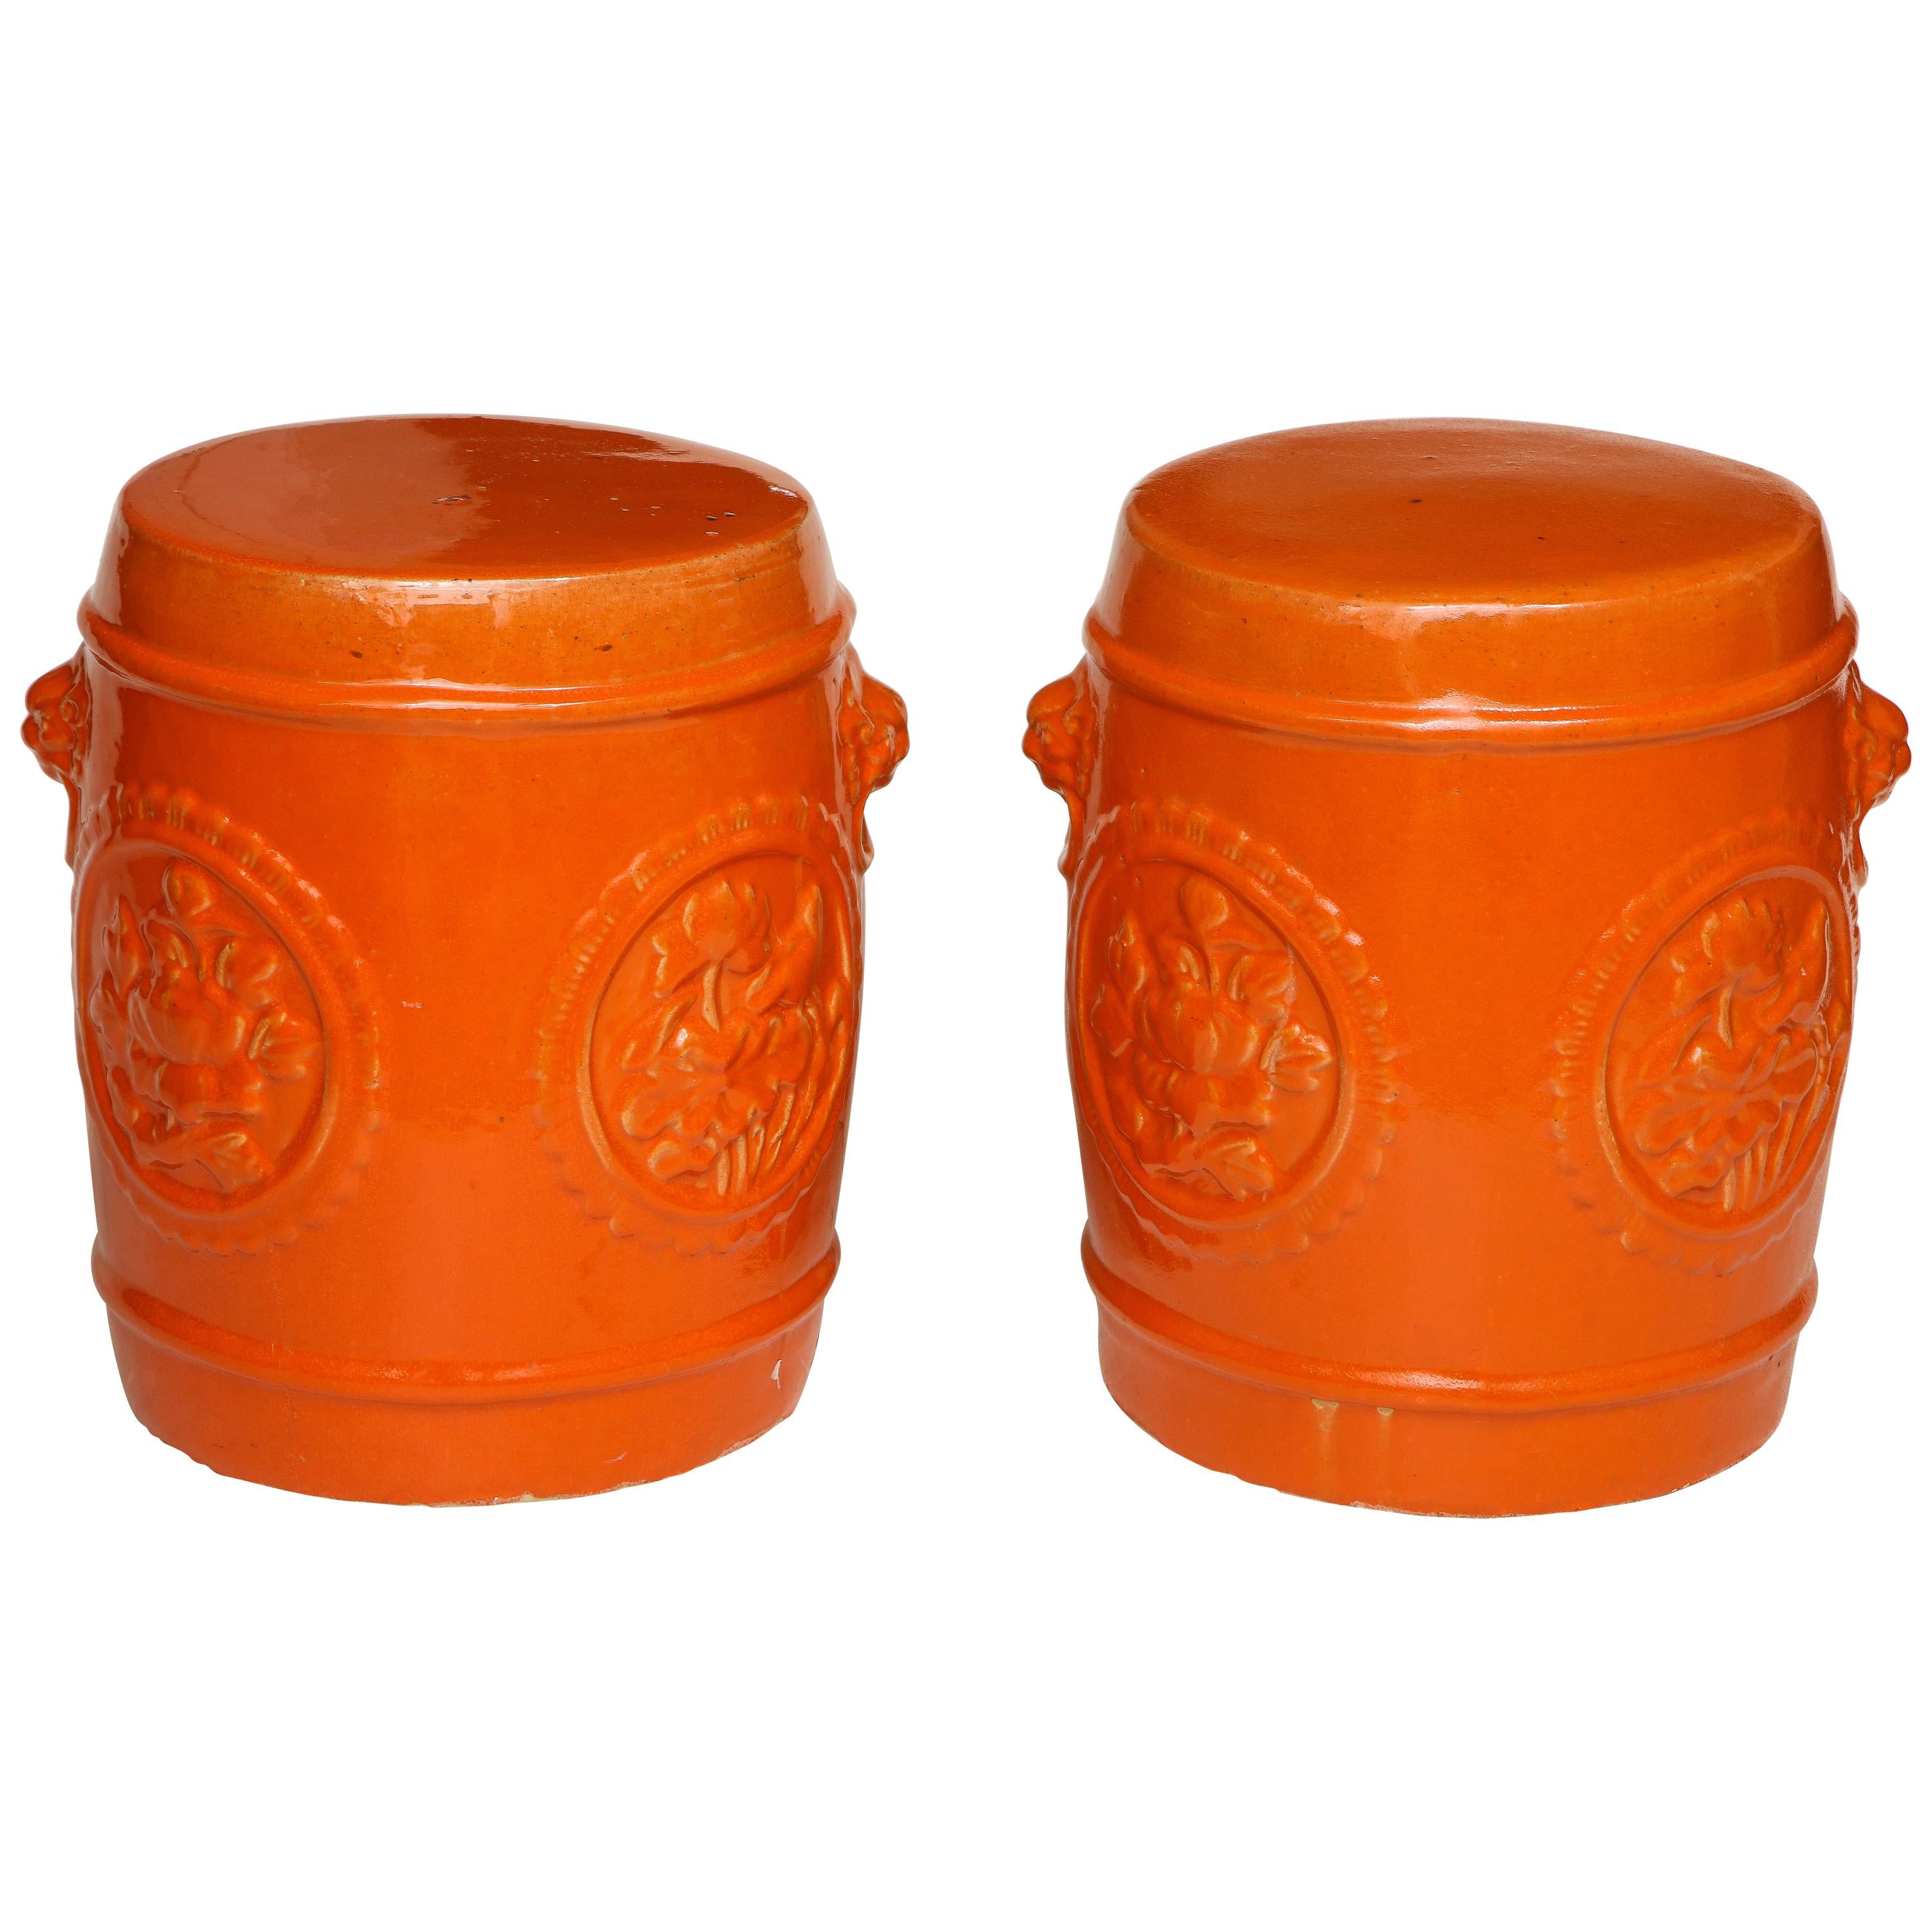 Pair of Orange Ceramic Garden Stools